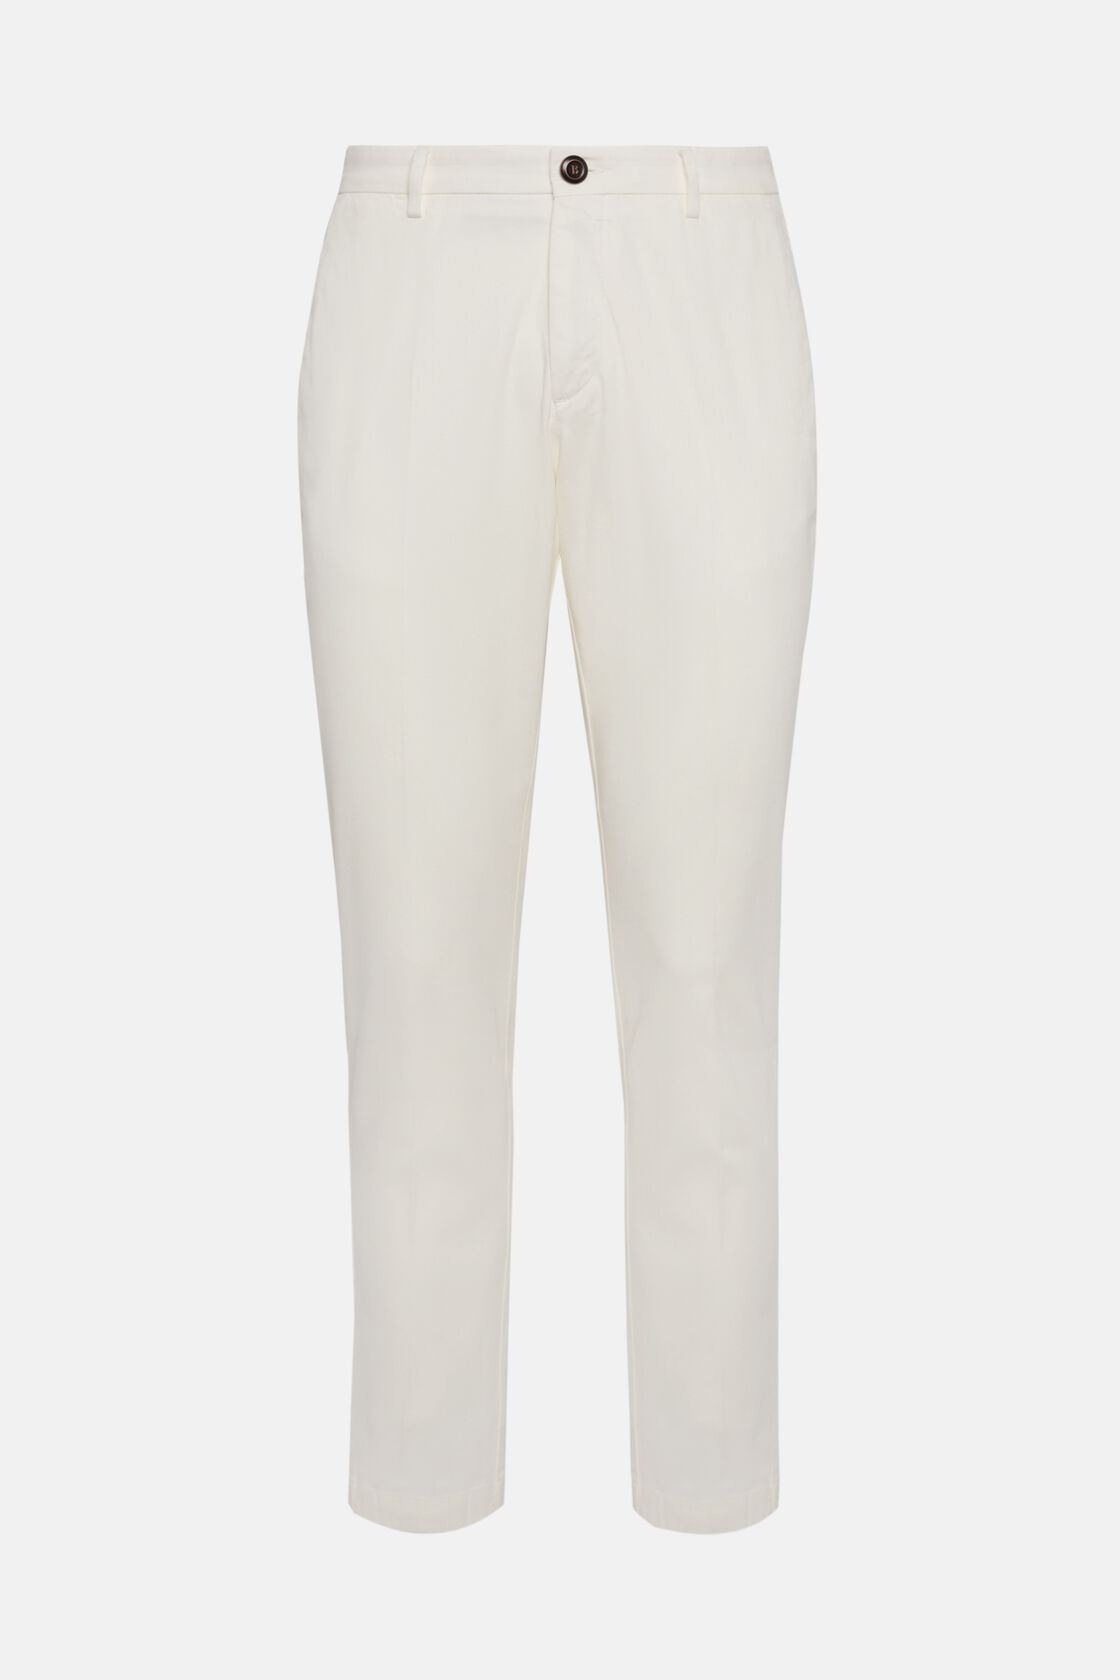 Pantaloni In Cotone Elasticizzato, Bianco, hi-res